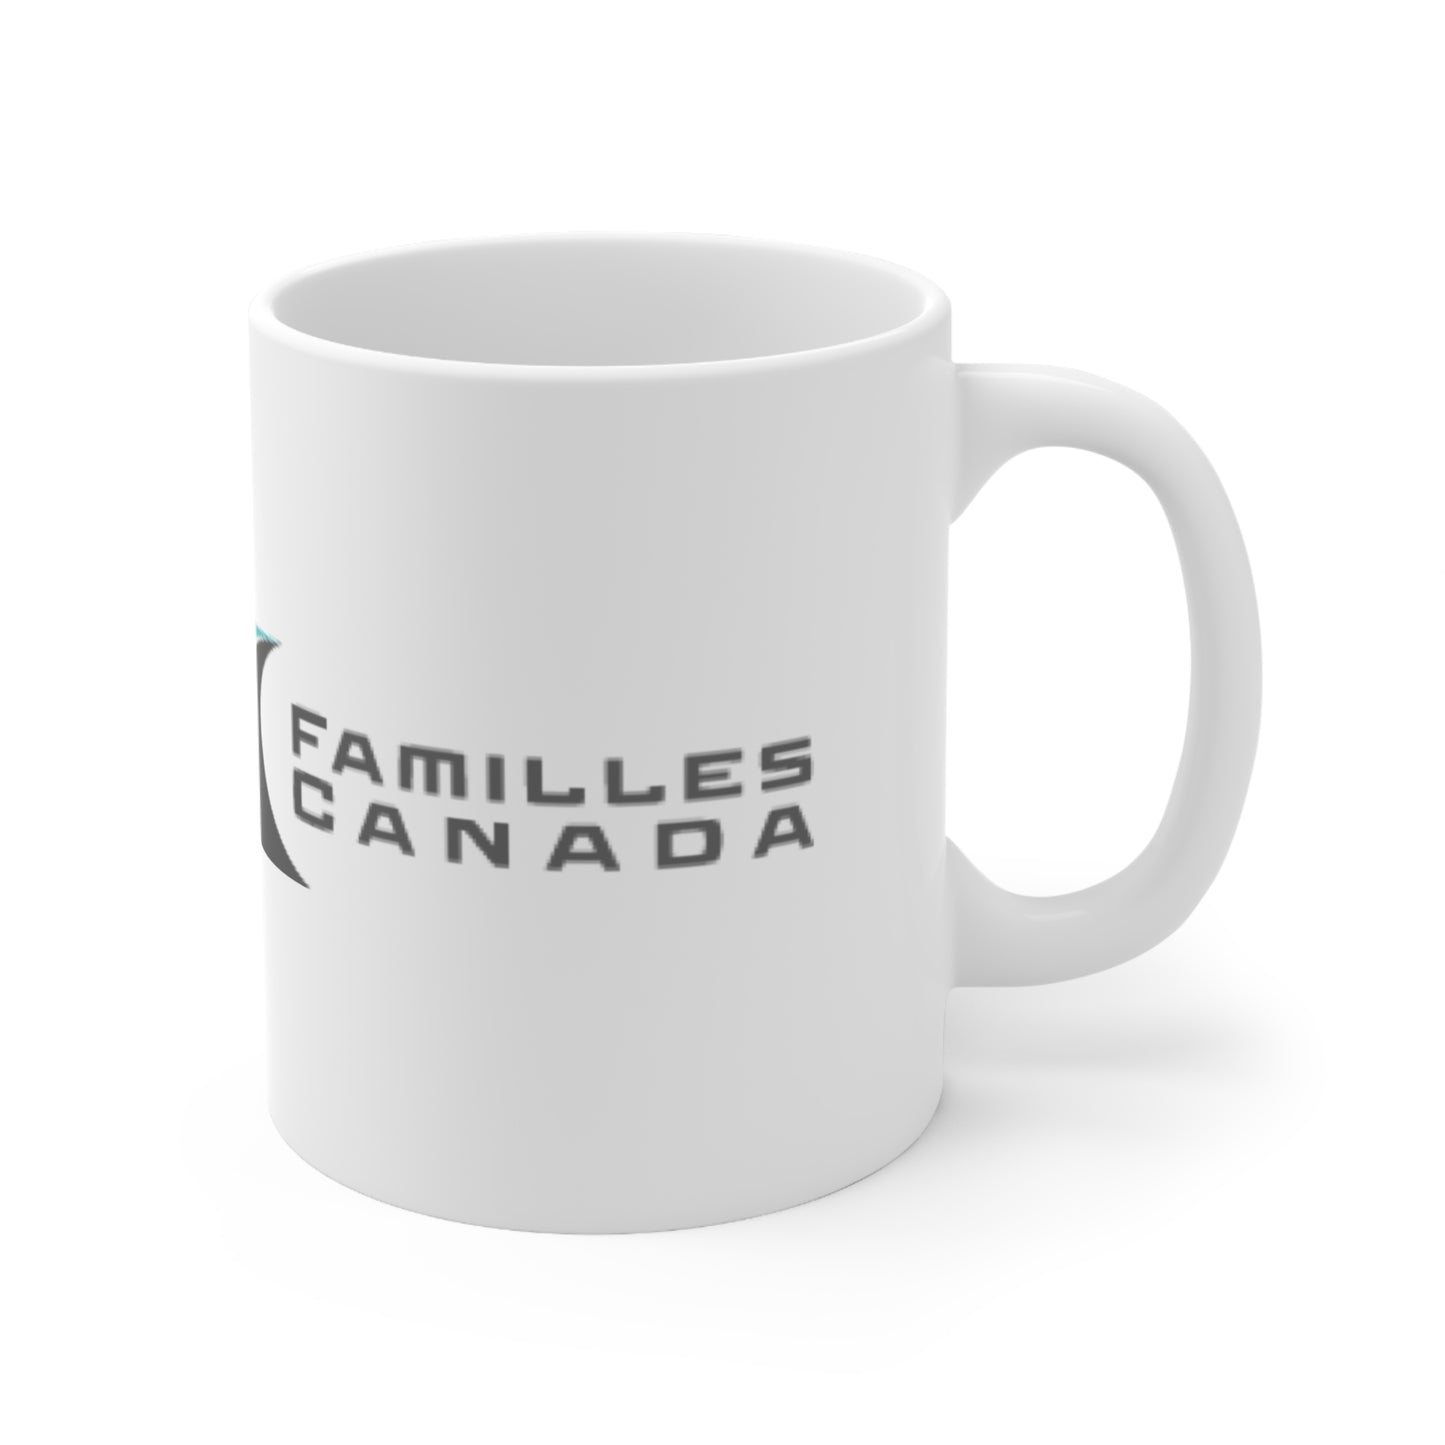 Families Canada Ceramic Mug 11oz